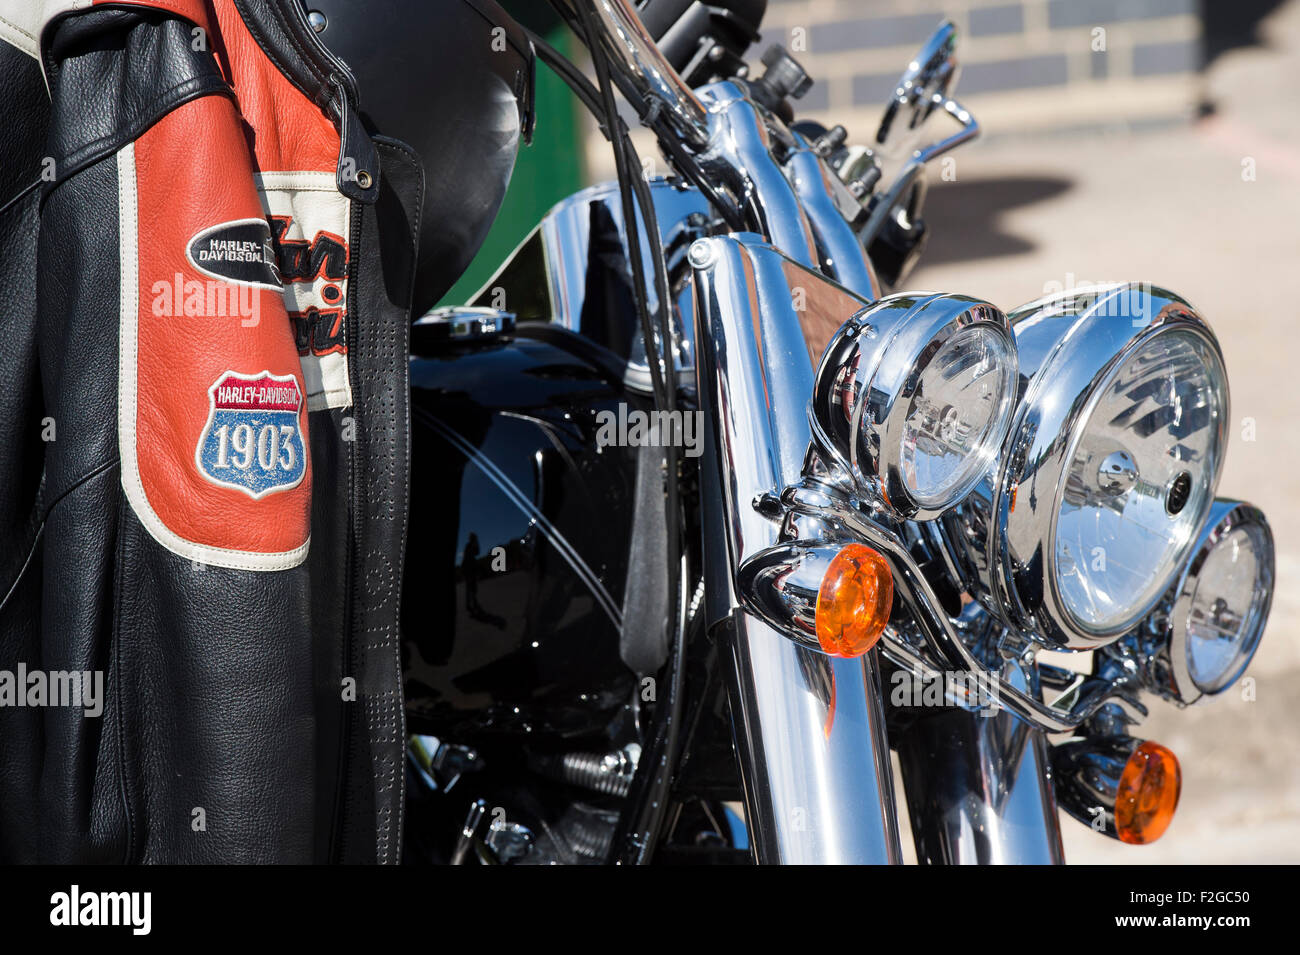 Harley Davidson Moto giacca appesi a un harley. Regno Unito Foto Stock